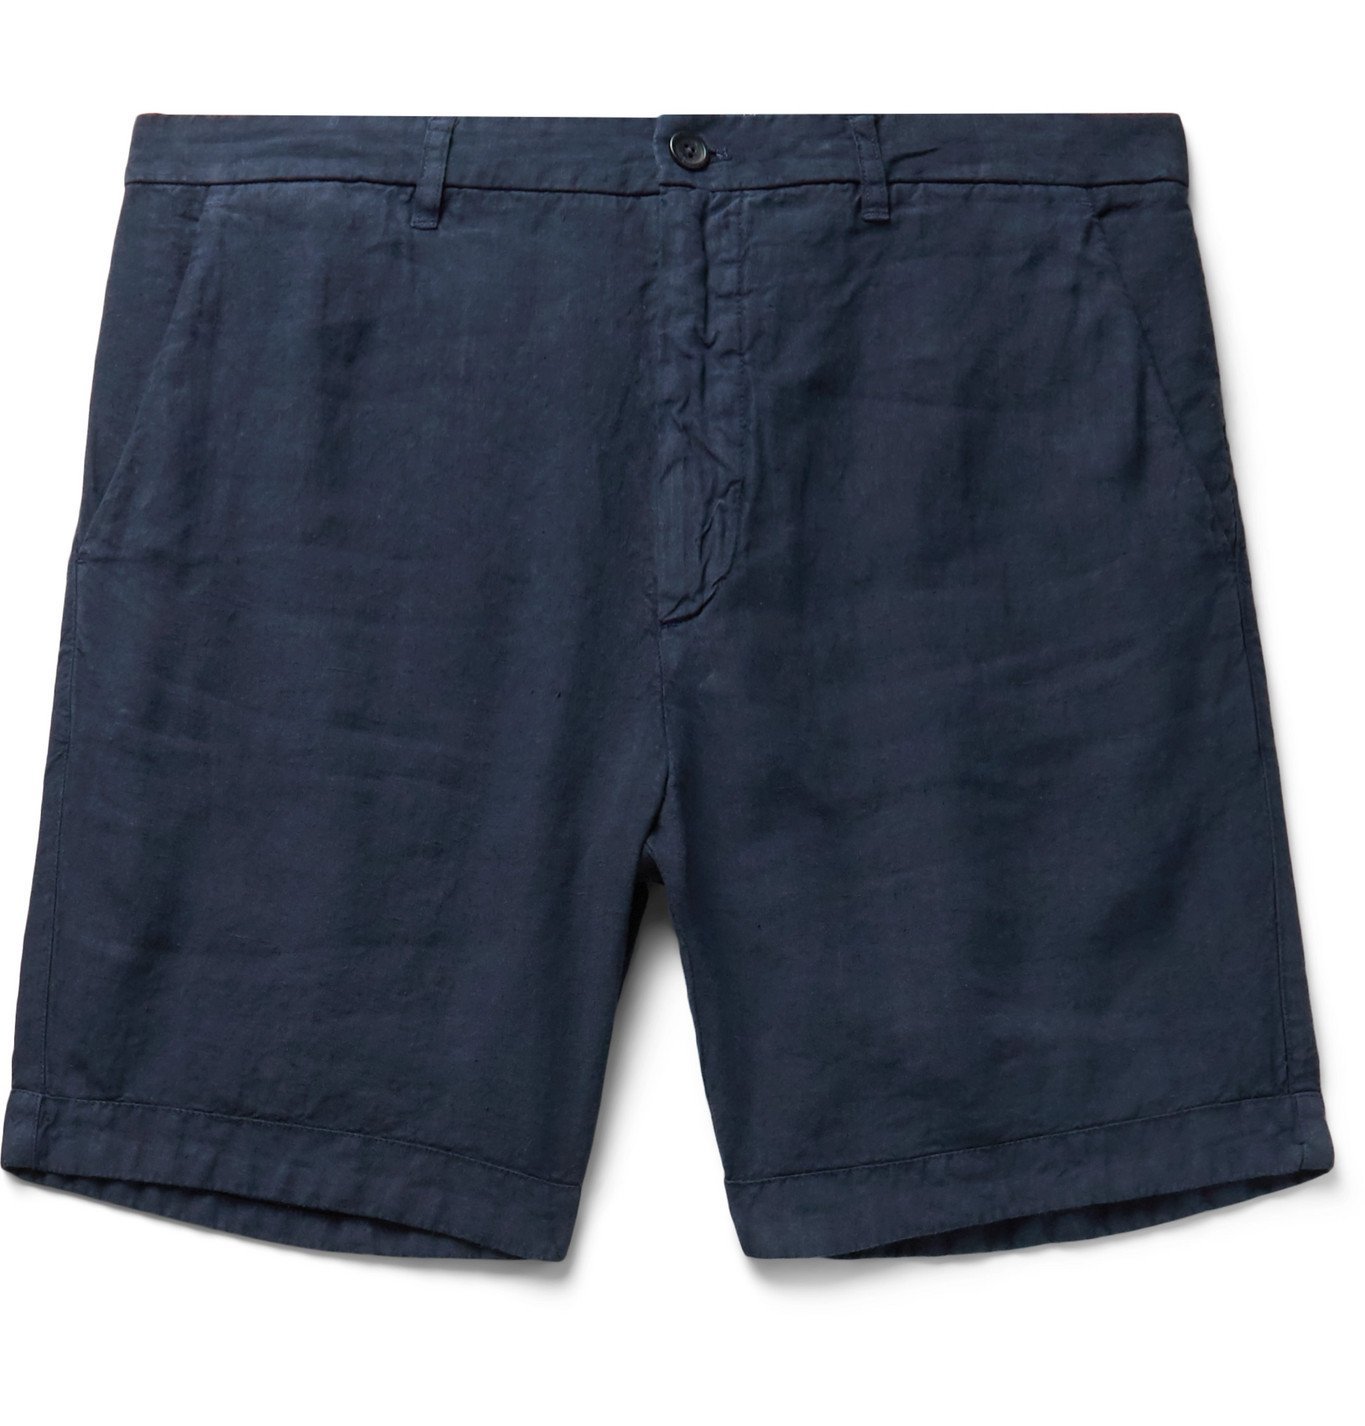 120% - Linen shorts - Blue 120%